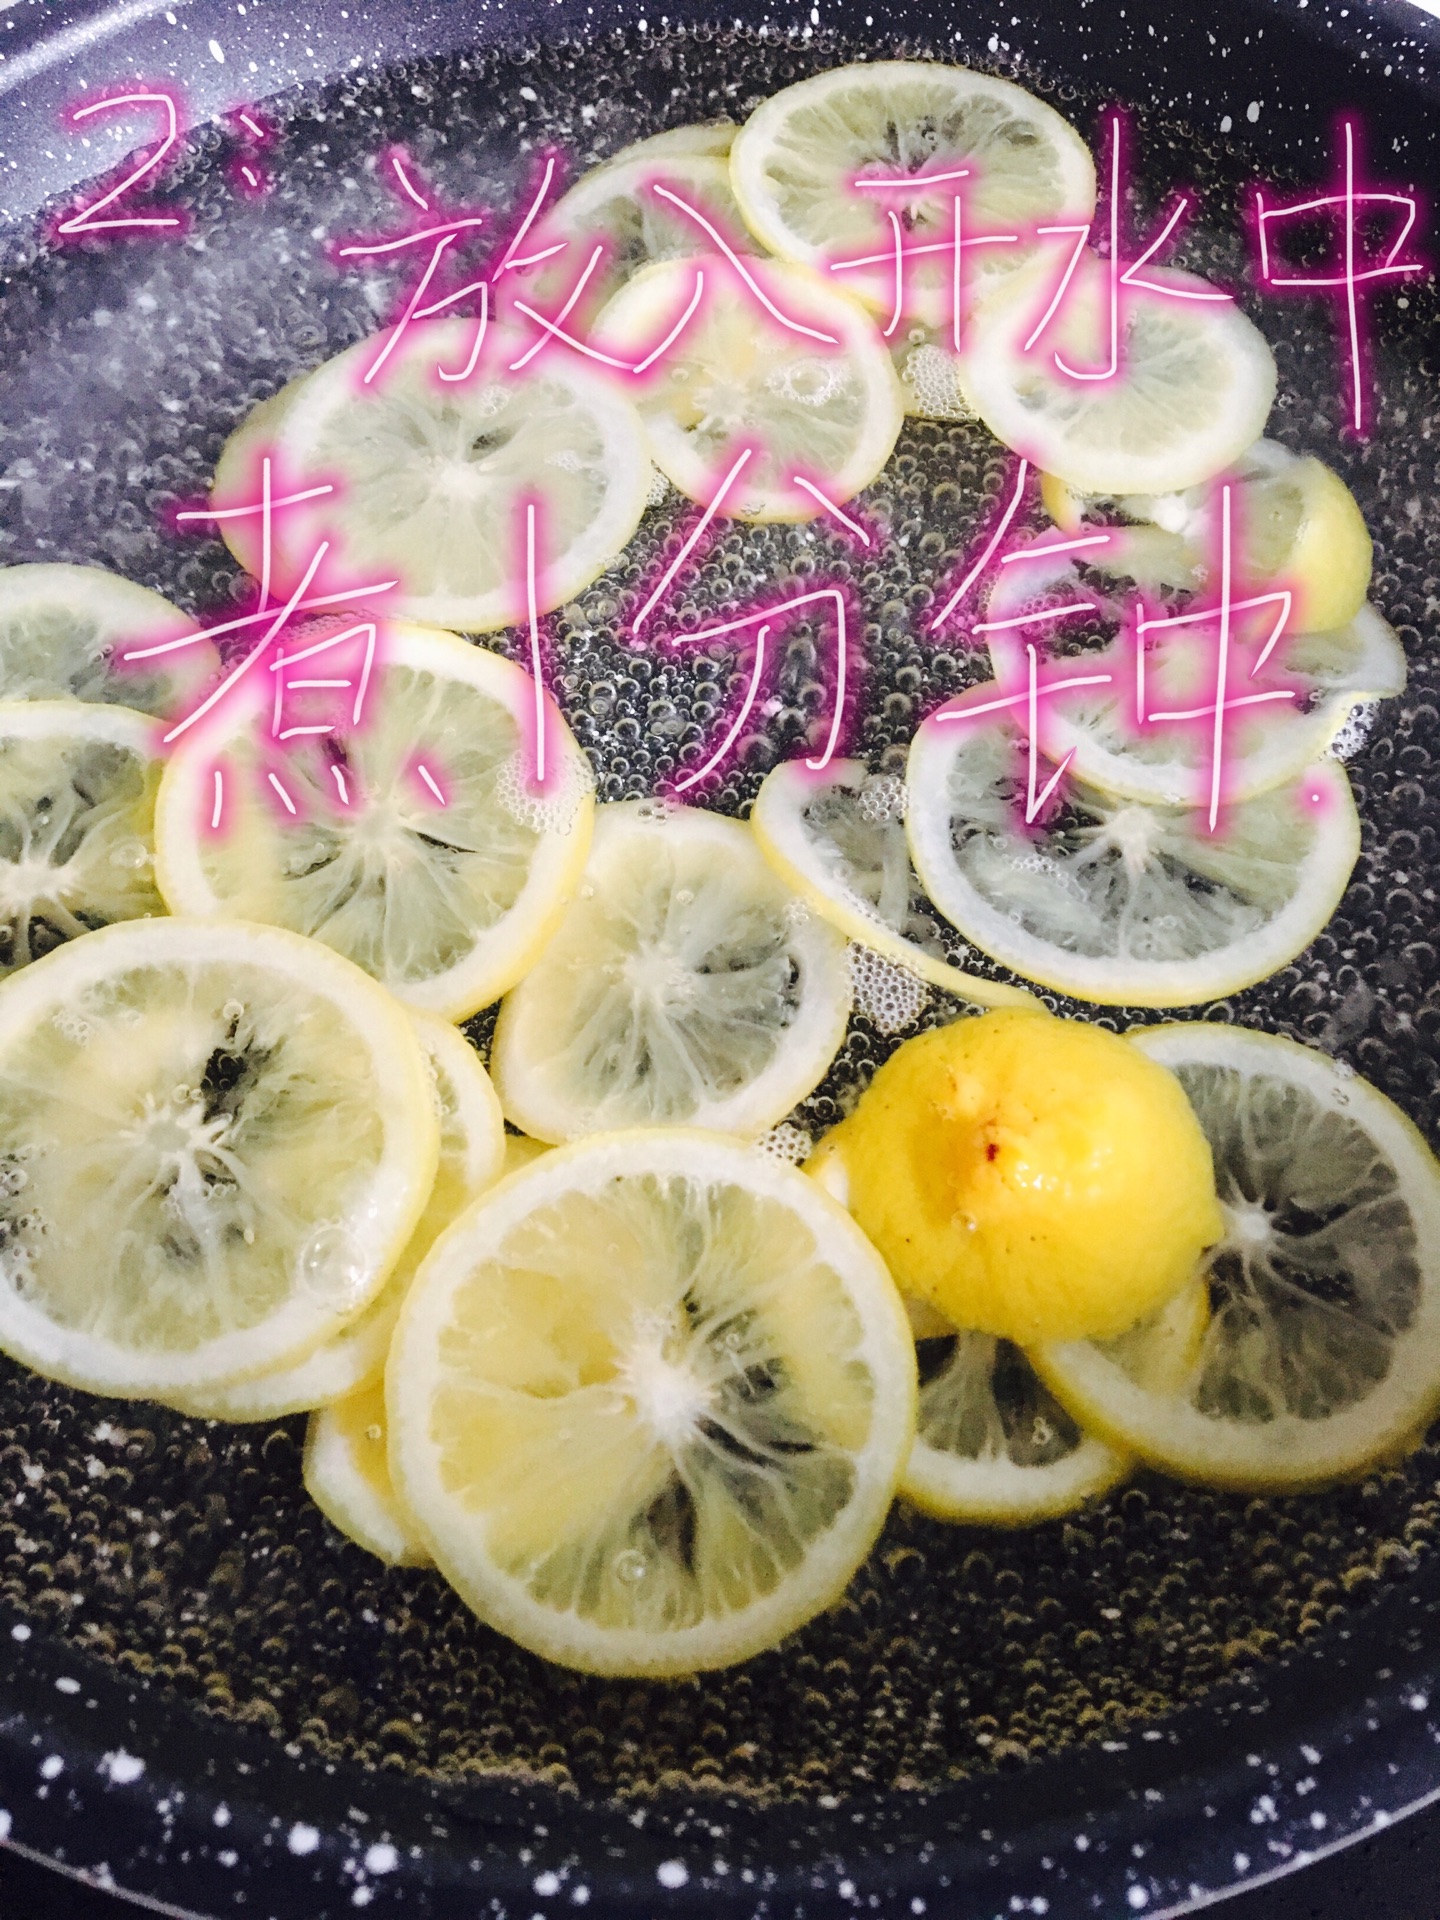 在水晶碗的柠檬 库存图片. 图片 包括有 汁液, 五颜六色, 柠檬, 植物群, 异乎寻常, 玻色子, 庭院 - 31520151